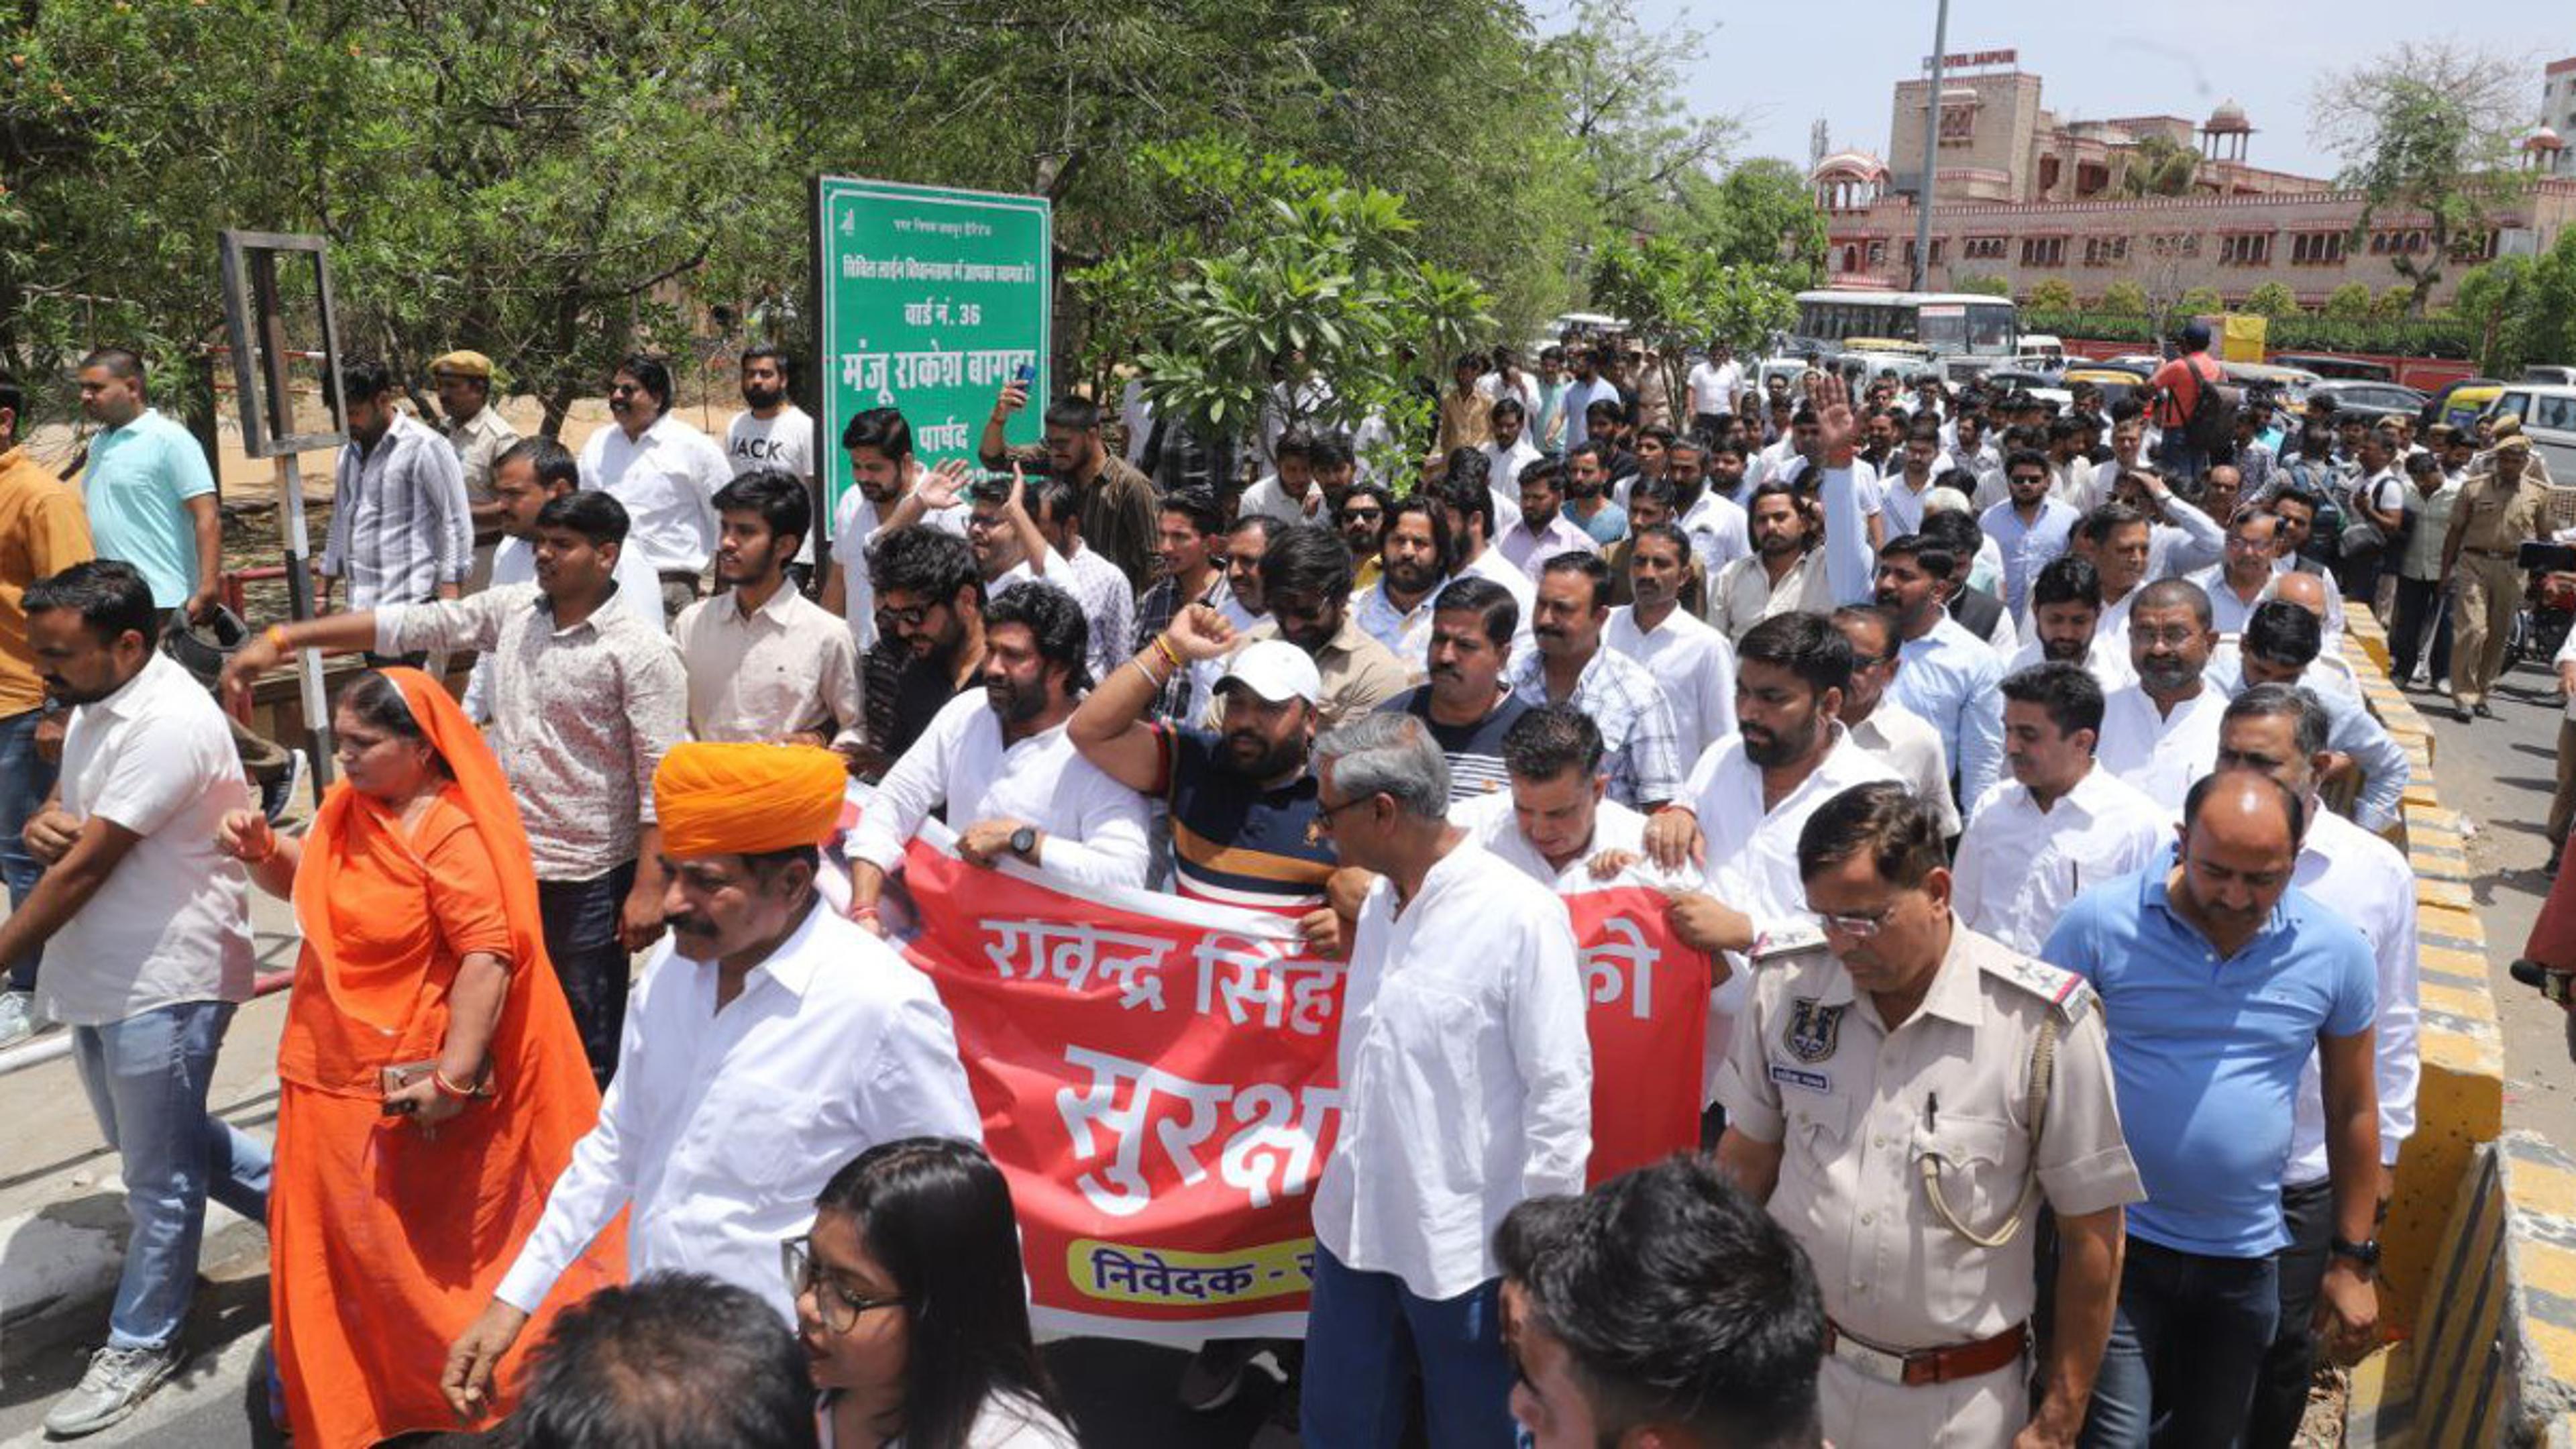 रविंद्र सिंह भाटी को जेड प्लस सुरक्षा देने की मांग, जयपुर में श्री राजपूत सभा का
प्रदर्शन, सरकार को दी ये चेतावनी